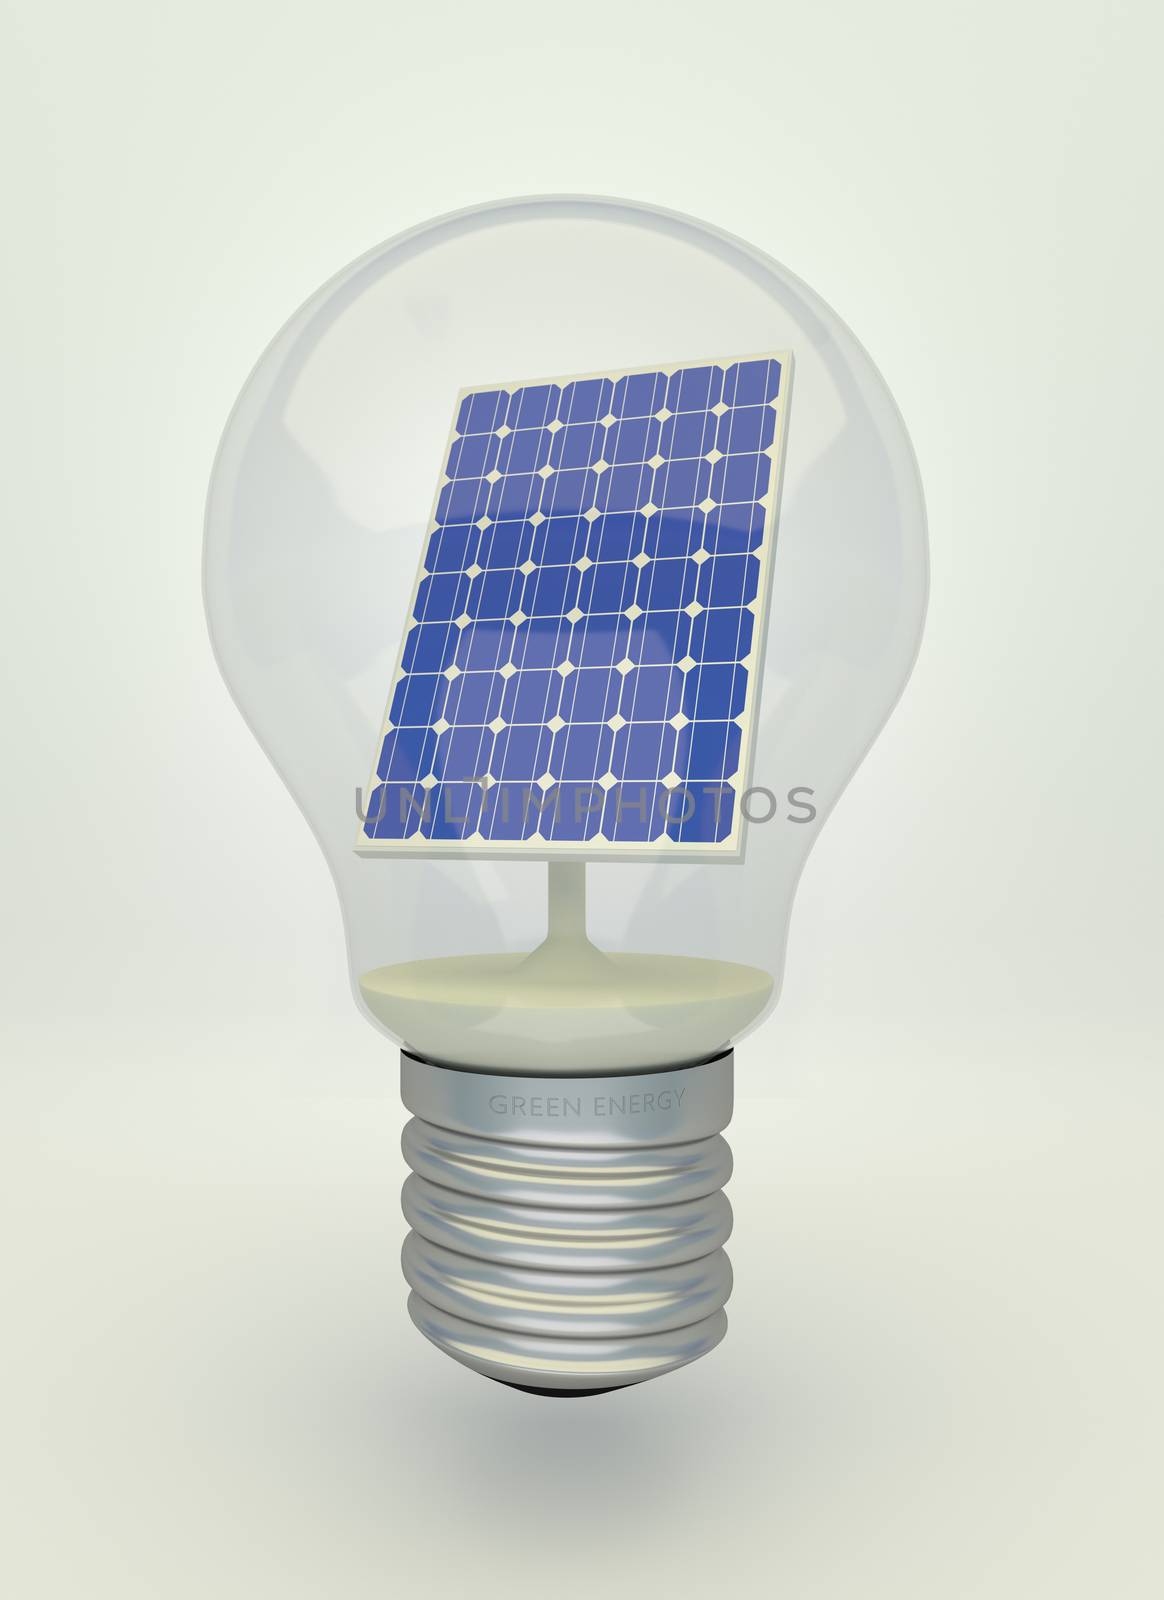 Solar panel inside light bulb, eco light bulb